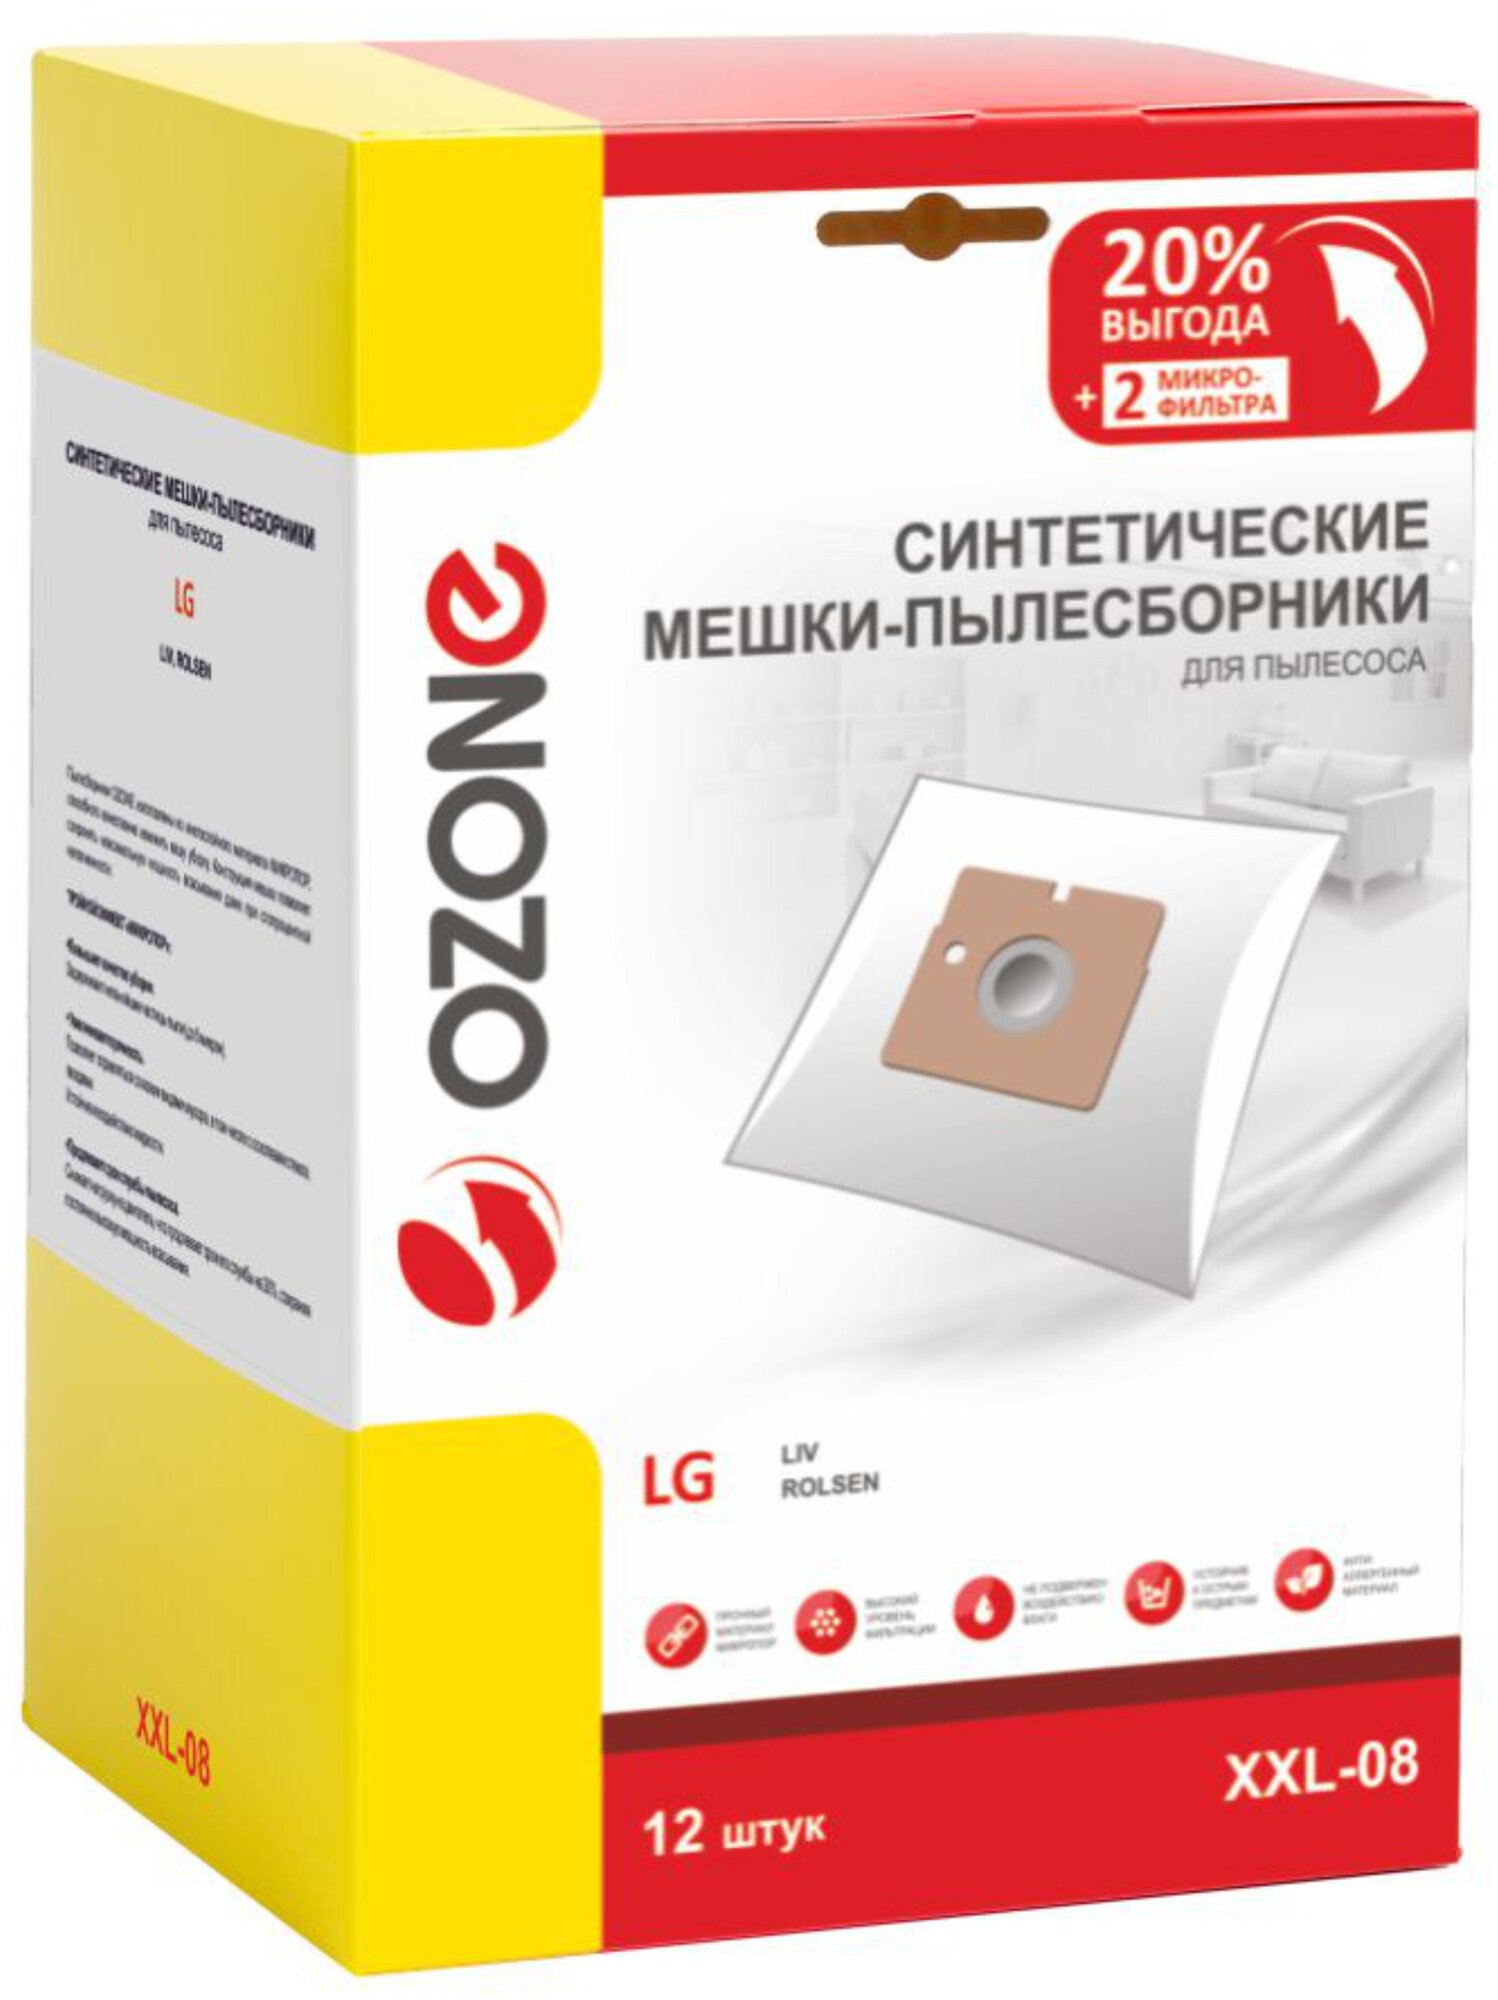 Синтетические мешки-пылесборники Ozone XXL-08 для пылесоса LG 12 шт + 2 микрофильтра